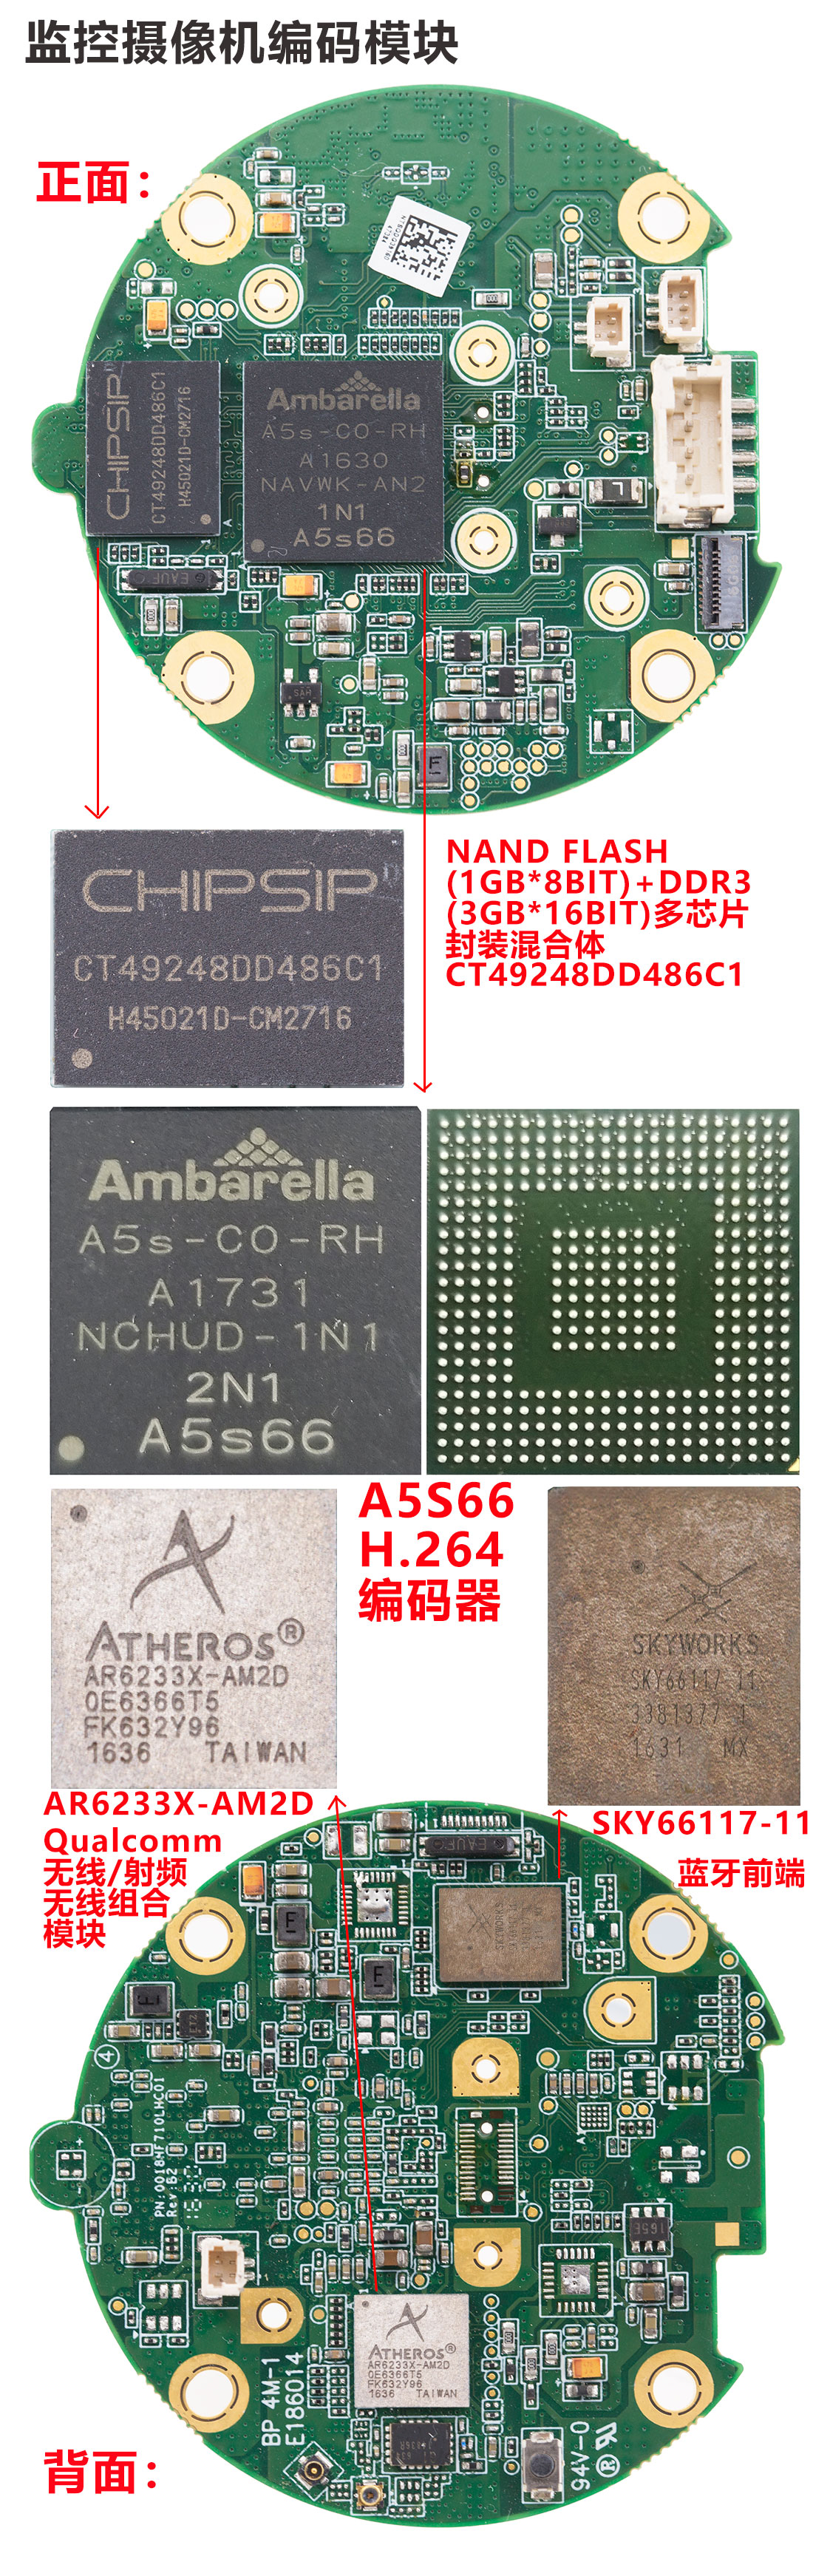 安霸代理商，安霸经销商，安霸芯片性能，安霸监控摄像机编码器价格，安霸代理商电话，A5S66分销商，A5S66规格书，A5S66图片，A5S66价格，A5S66代理商，安霸A5S66摄像机行车记录仪主控DSP编码芯片,CT49248DD486C1 1GB nand flash+3GB DDR3多芯片封装混合体价格分销商代理商规格书,AR6233XAM2D现货,SKY66117-11现货，A5S66安防监控摄像机模组，可拆A5S66再利用